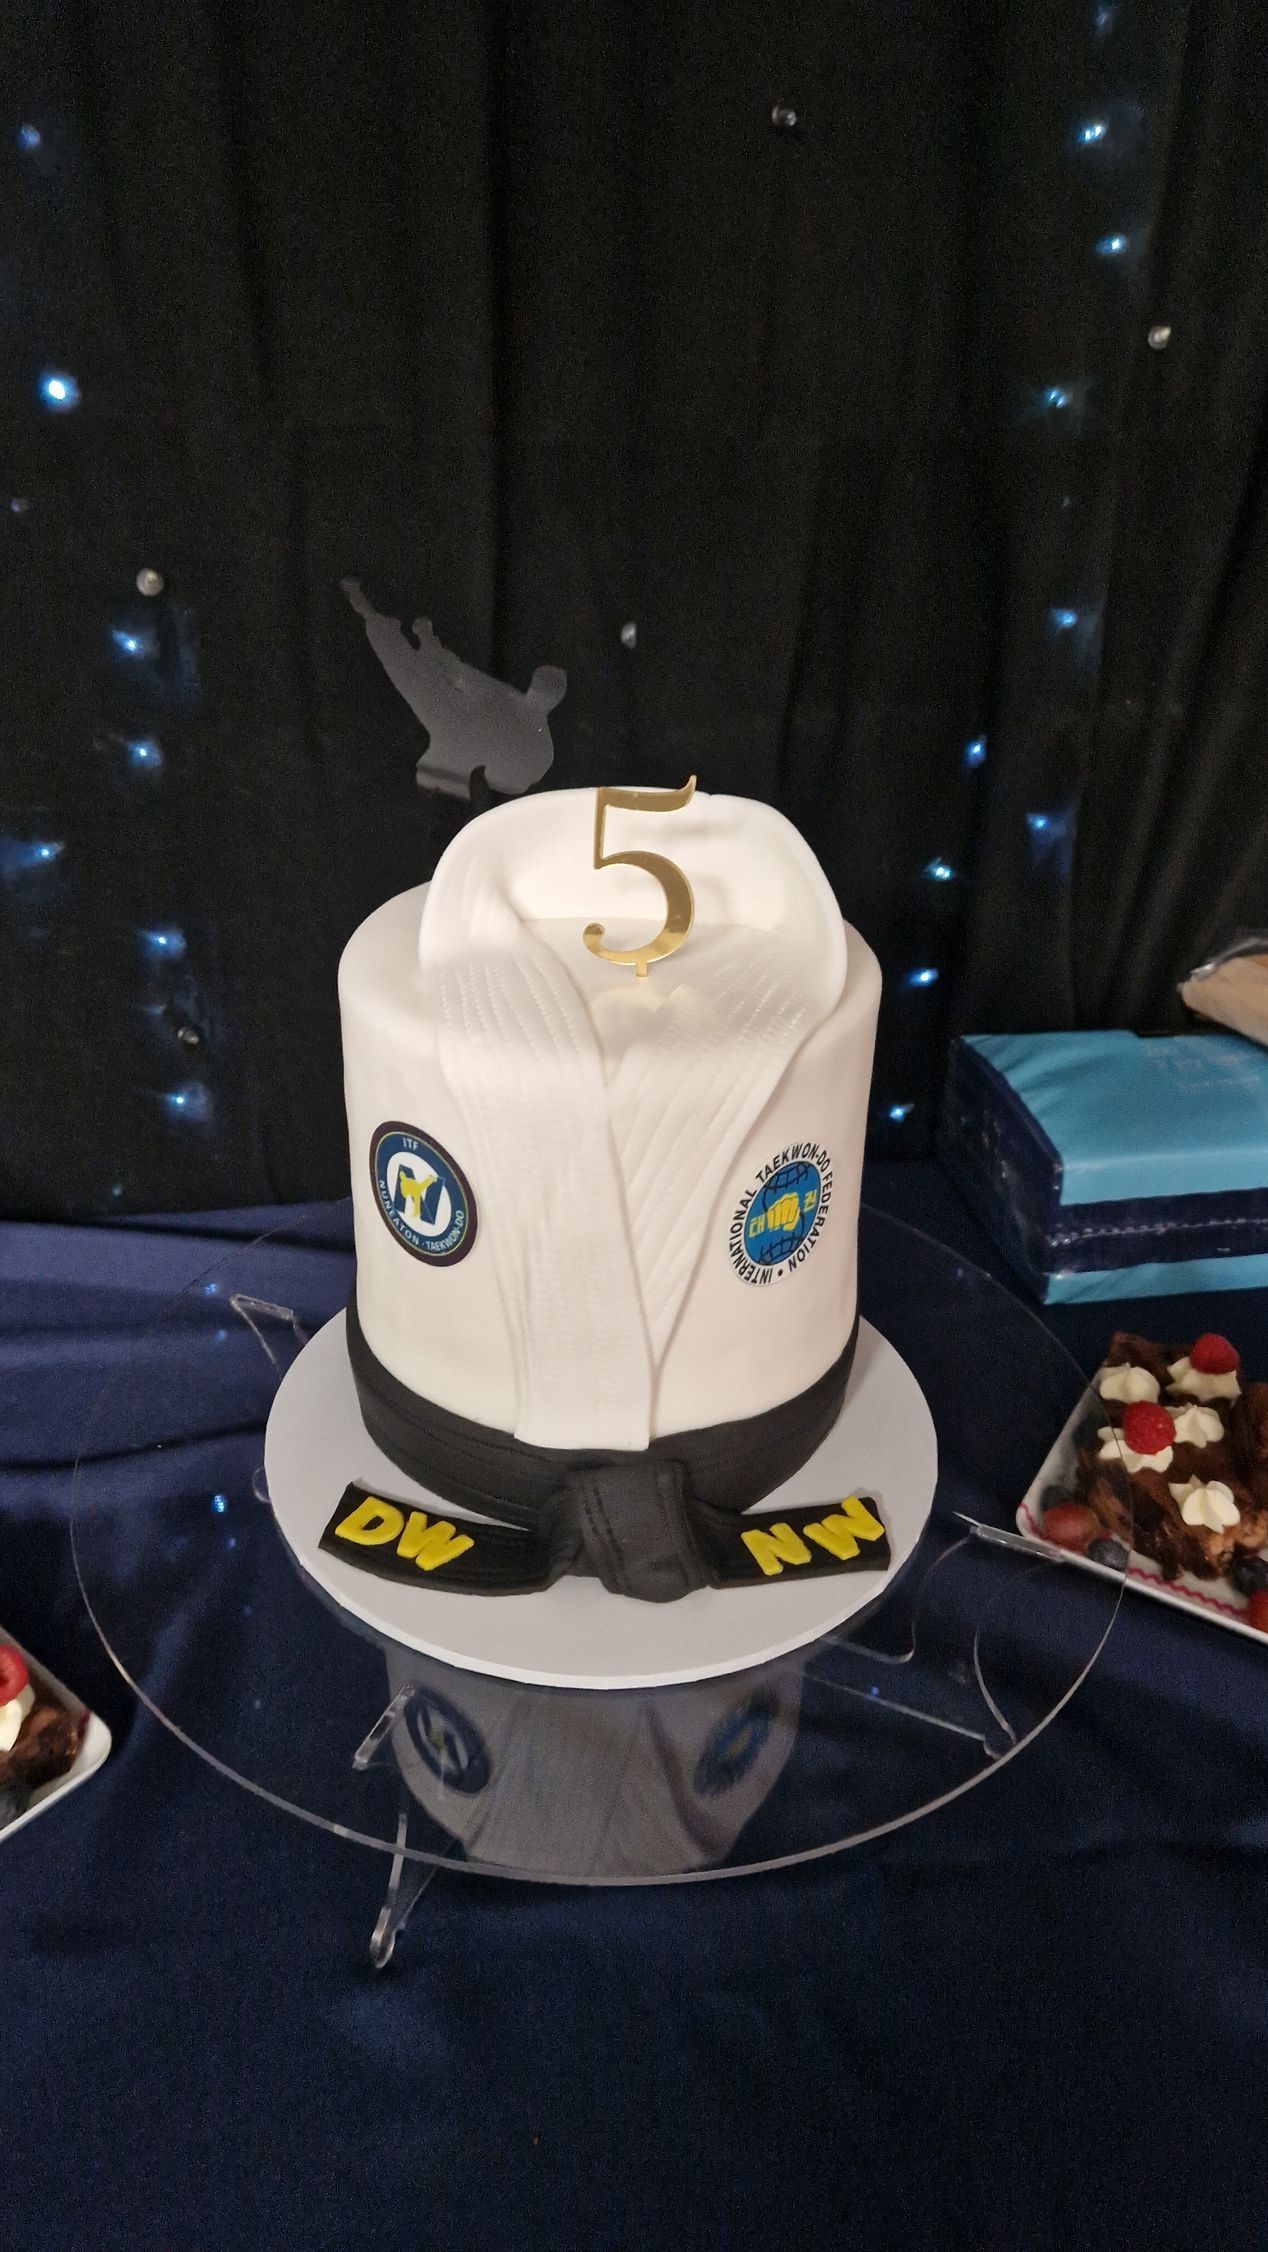 Nuneaton TKD 5 Year Anniversary cake